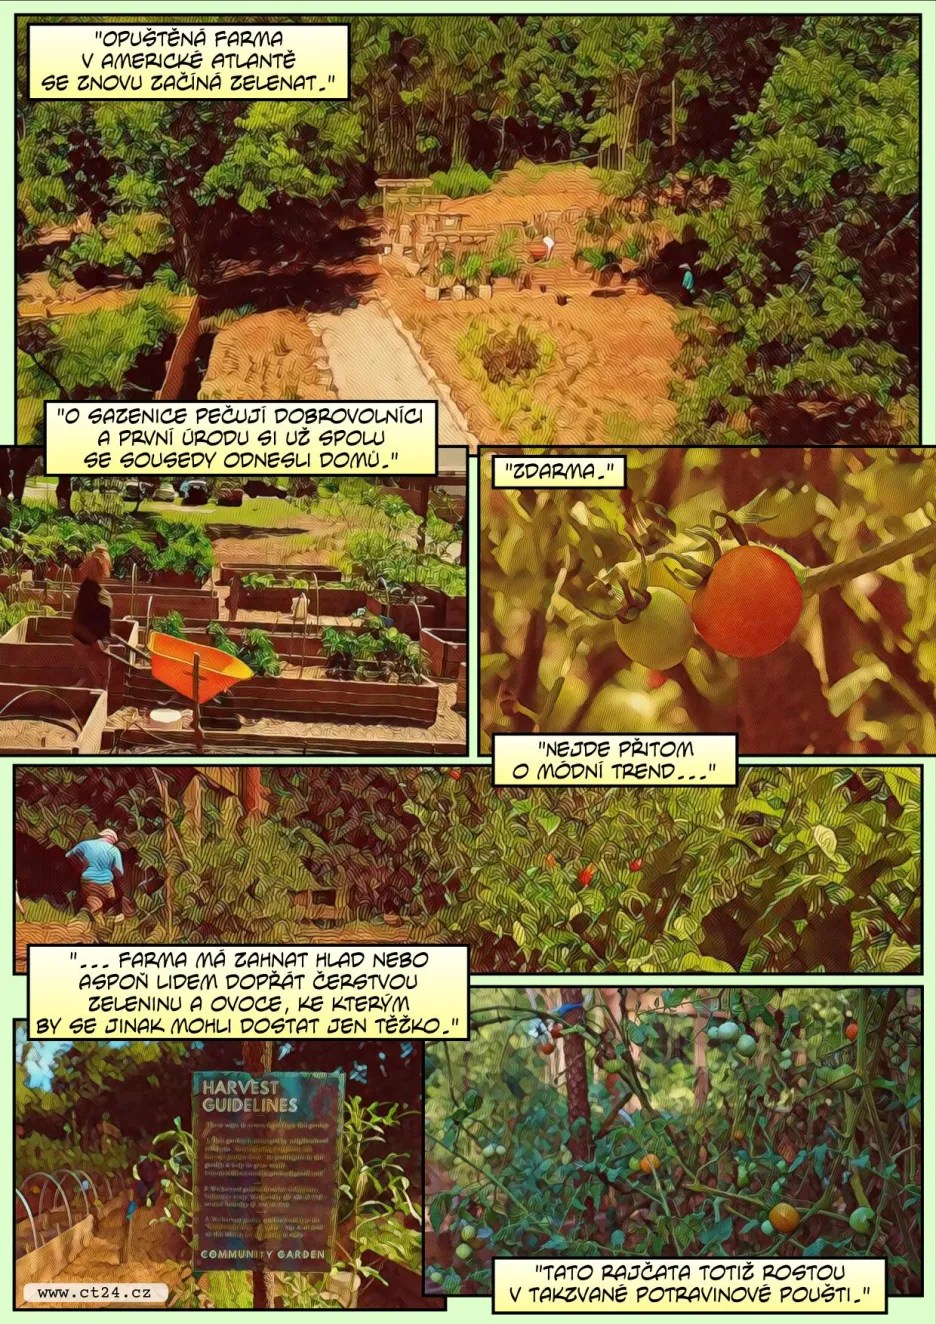 Komunitní zahrada v potravinové poušti